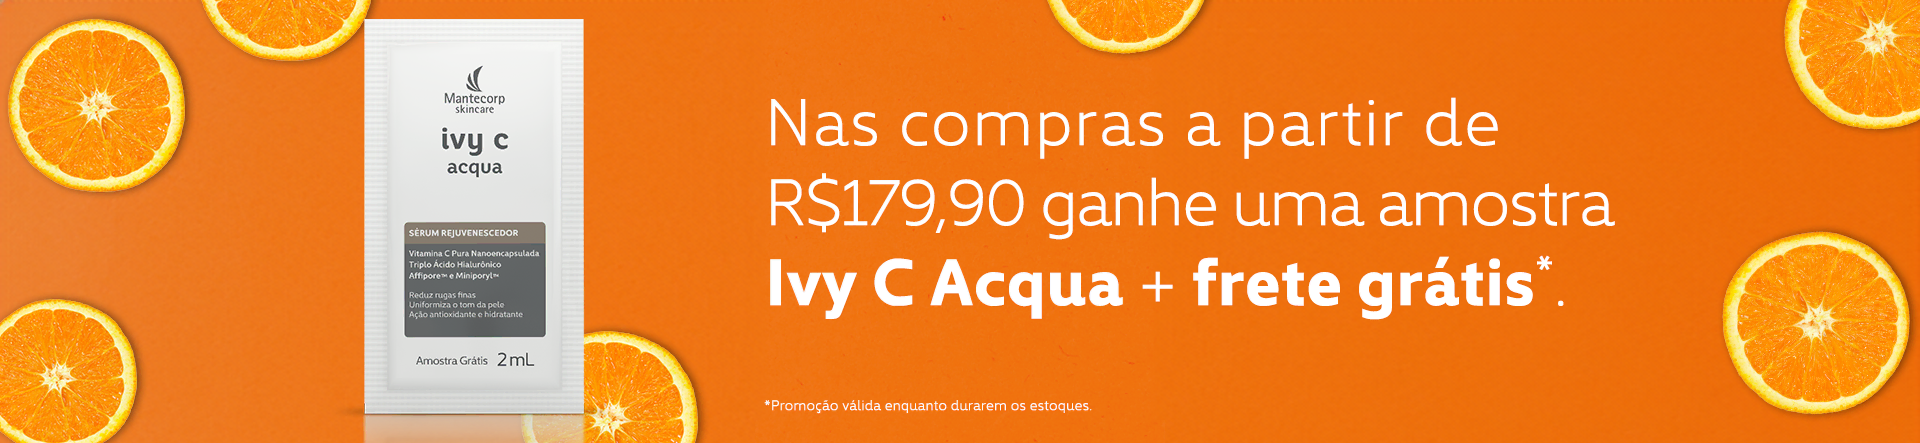 Banner Promoção Avy C Aqua + frete grátis.